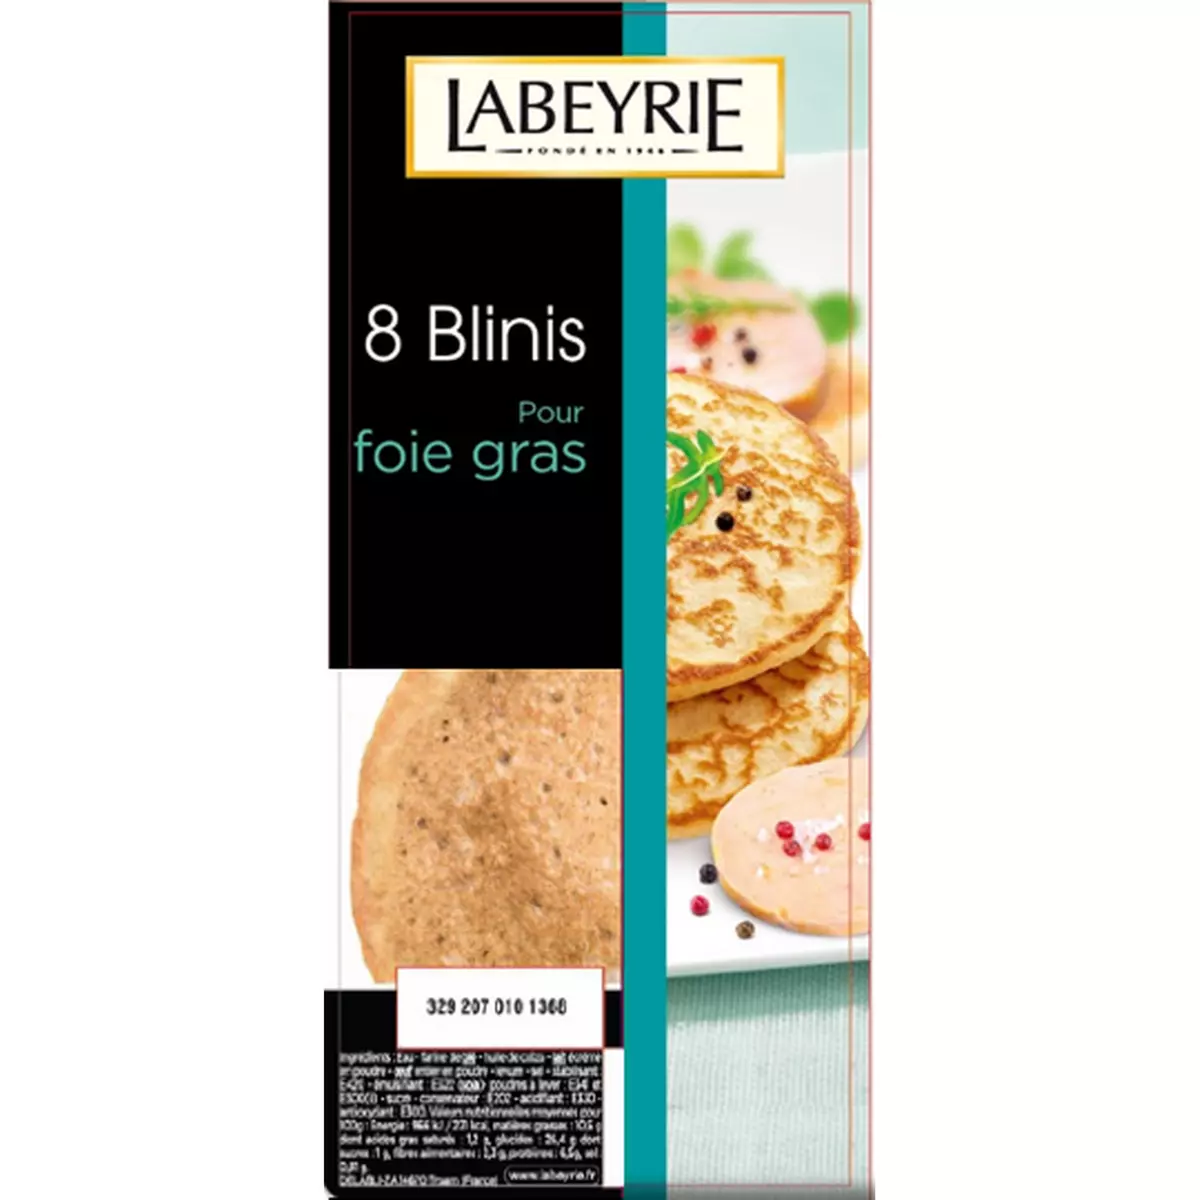 LABEYRIE Blinis spécial foie gras 8 pièces 200g